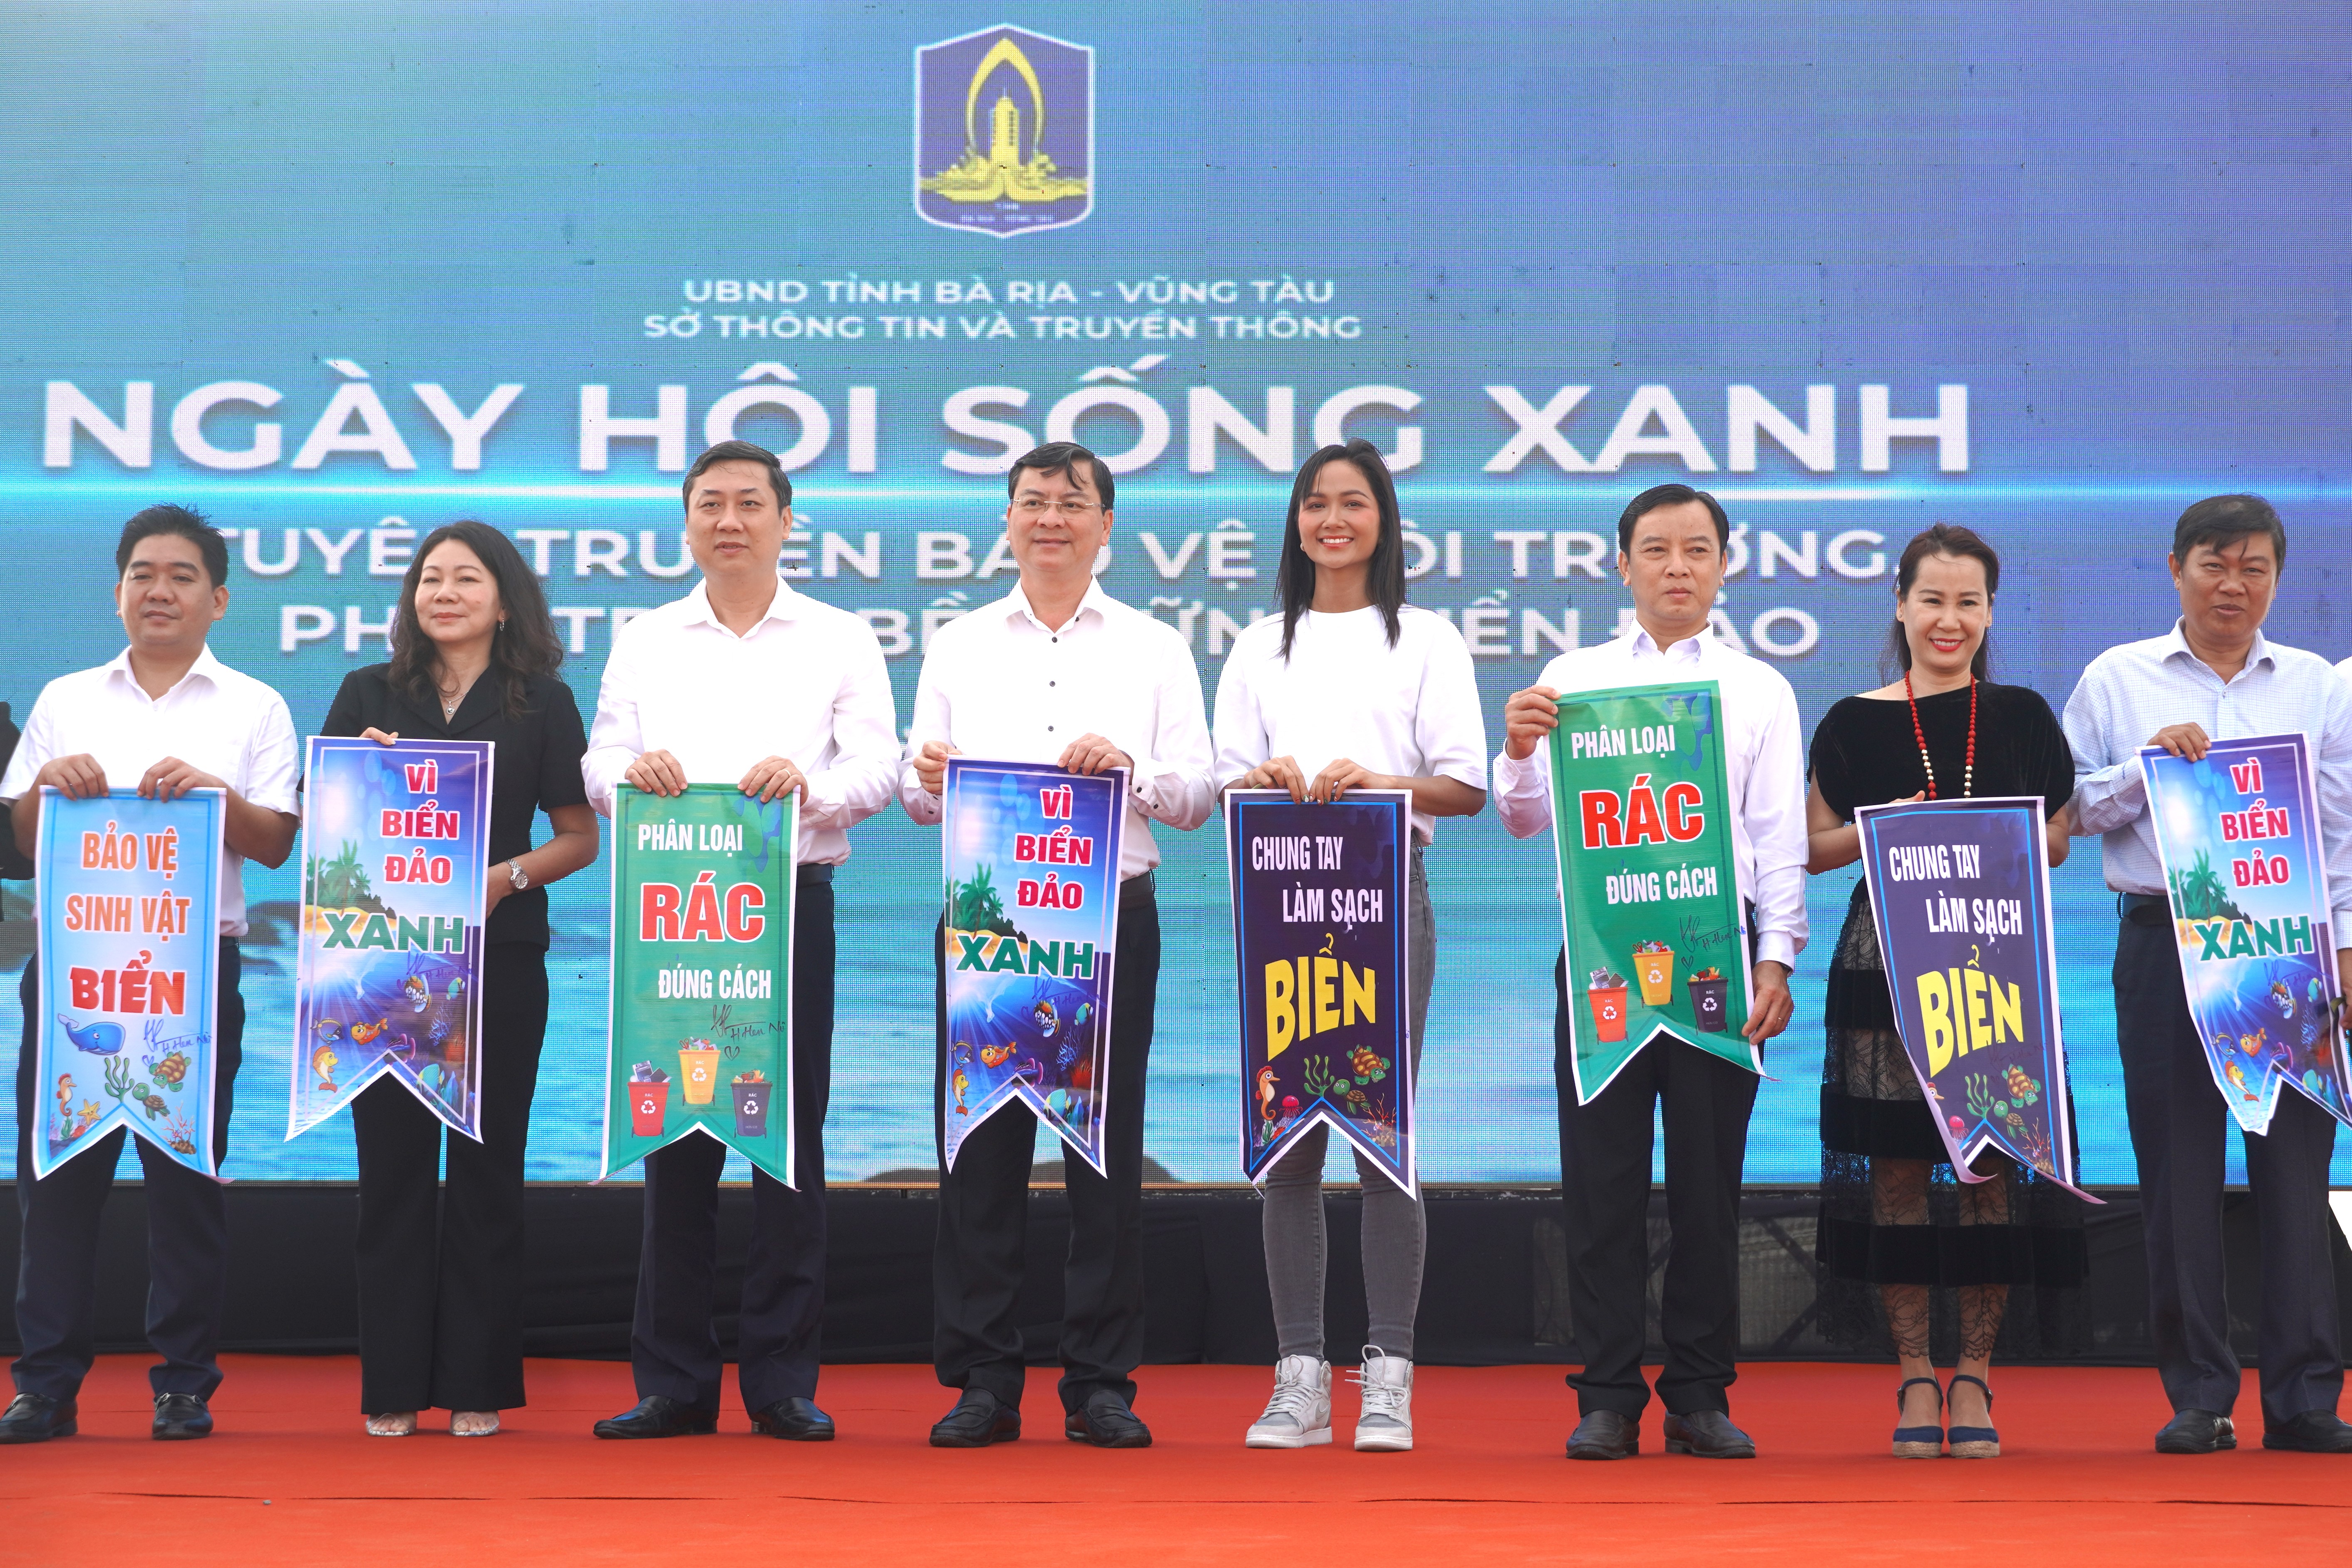 Lãnh đạo tỉnh, địa phương cùng hoa hậu H'Hen Niê, nhạc sĩ Giáng Son cùng tham gia phát động, tuyên truyền bảo vệ môi trường. Ảnh: Thành An